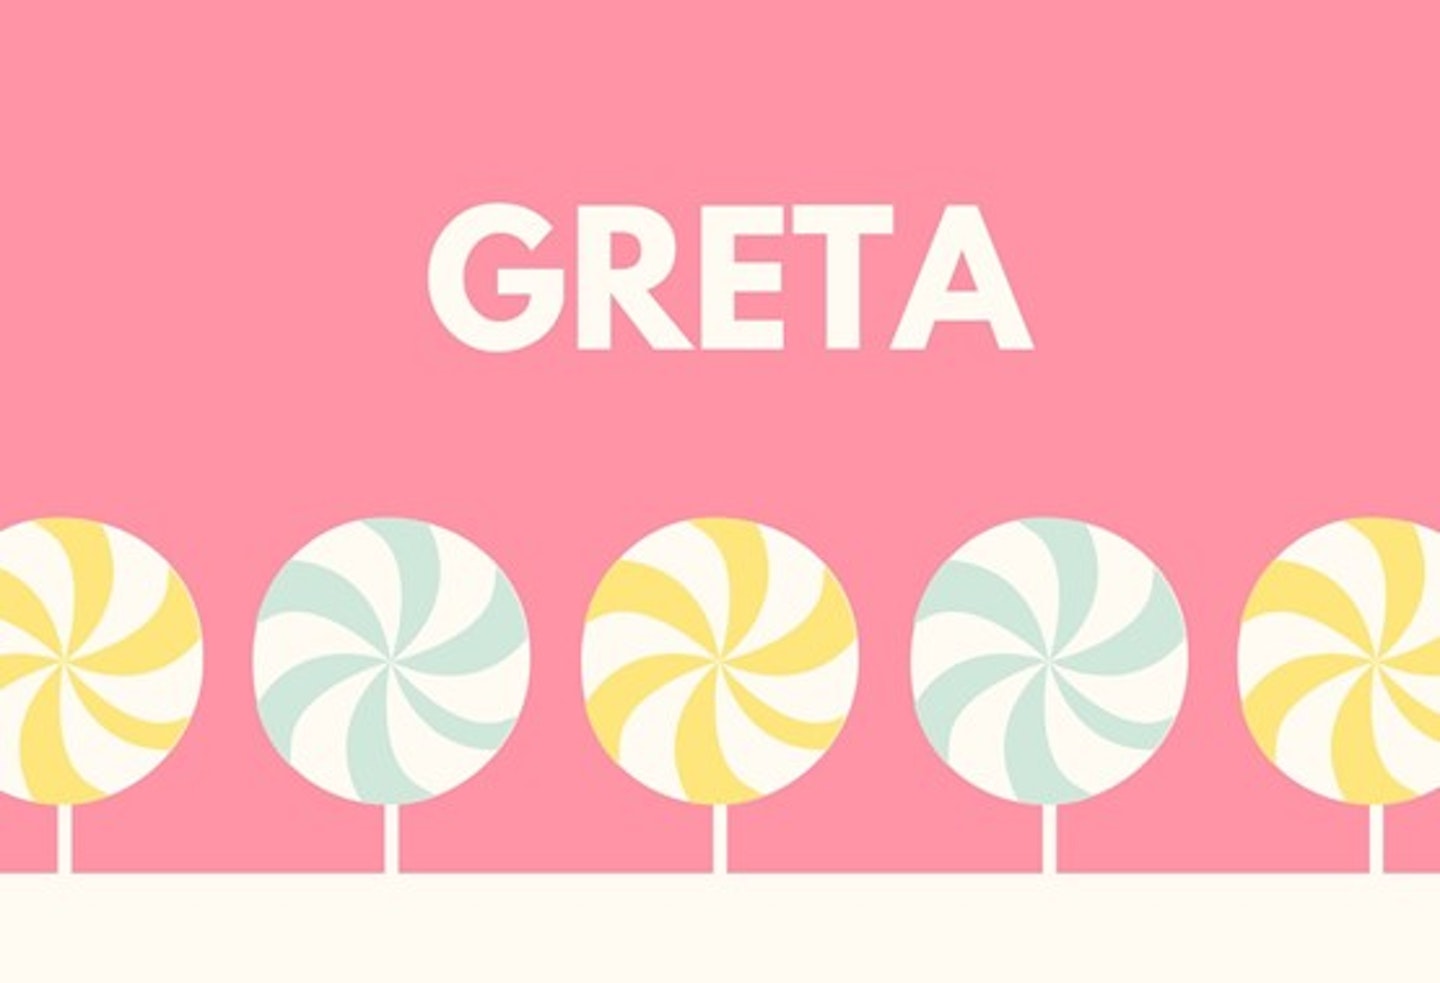 10) Greta